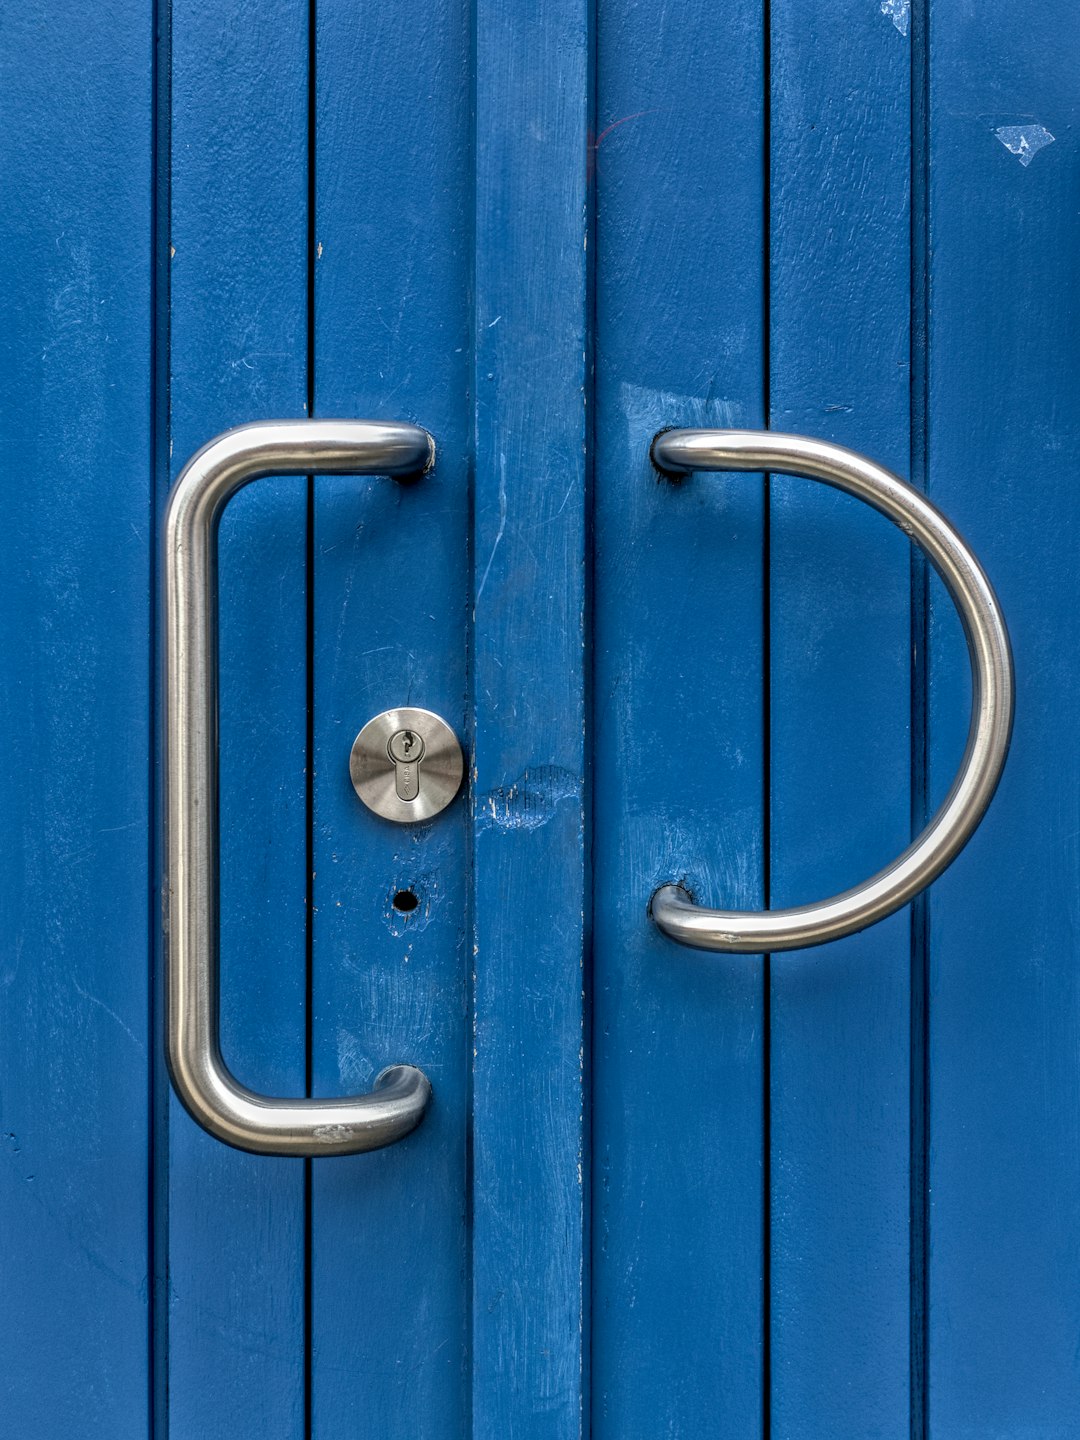 blue wooden door with silver handle